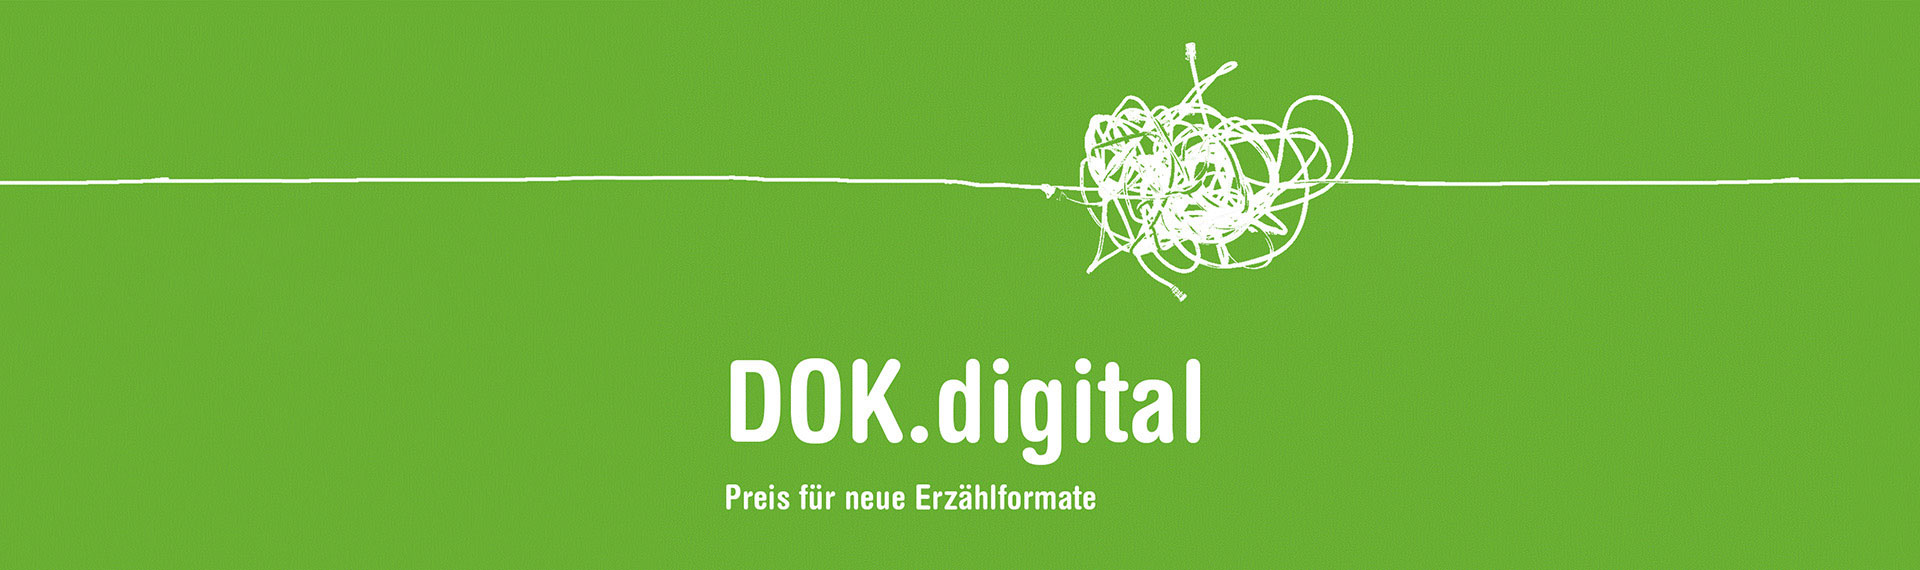 DOK.digital: Pitches der nominierten Projekte